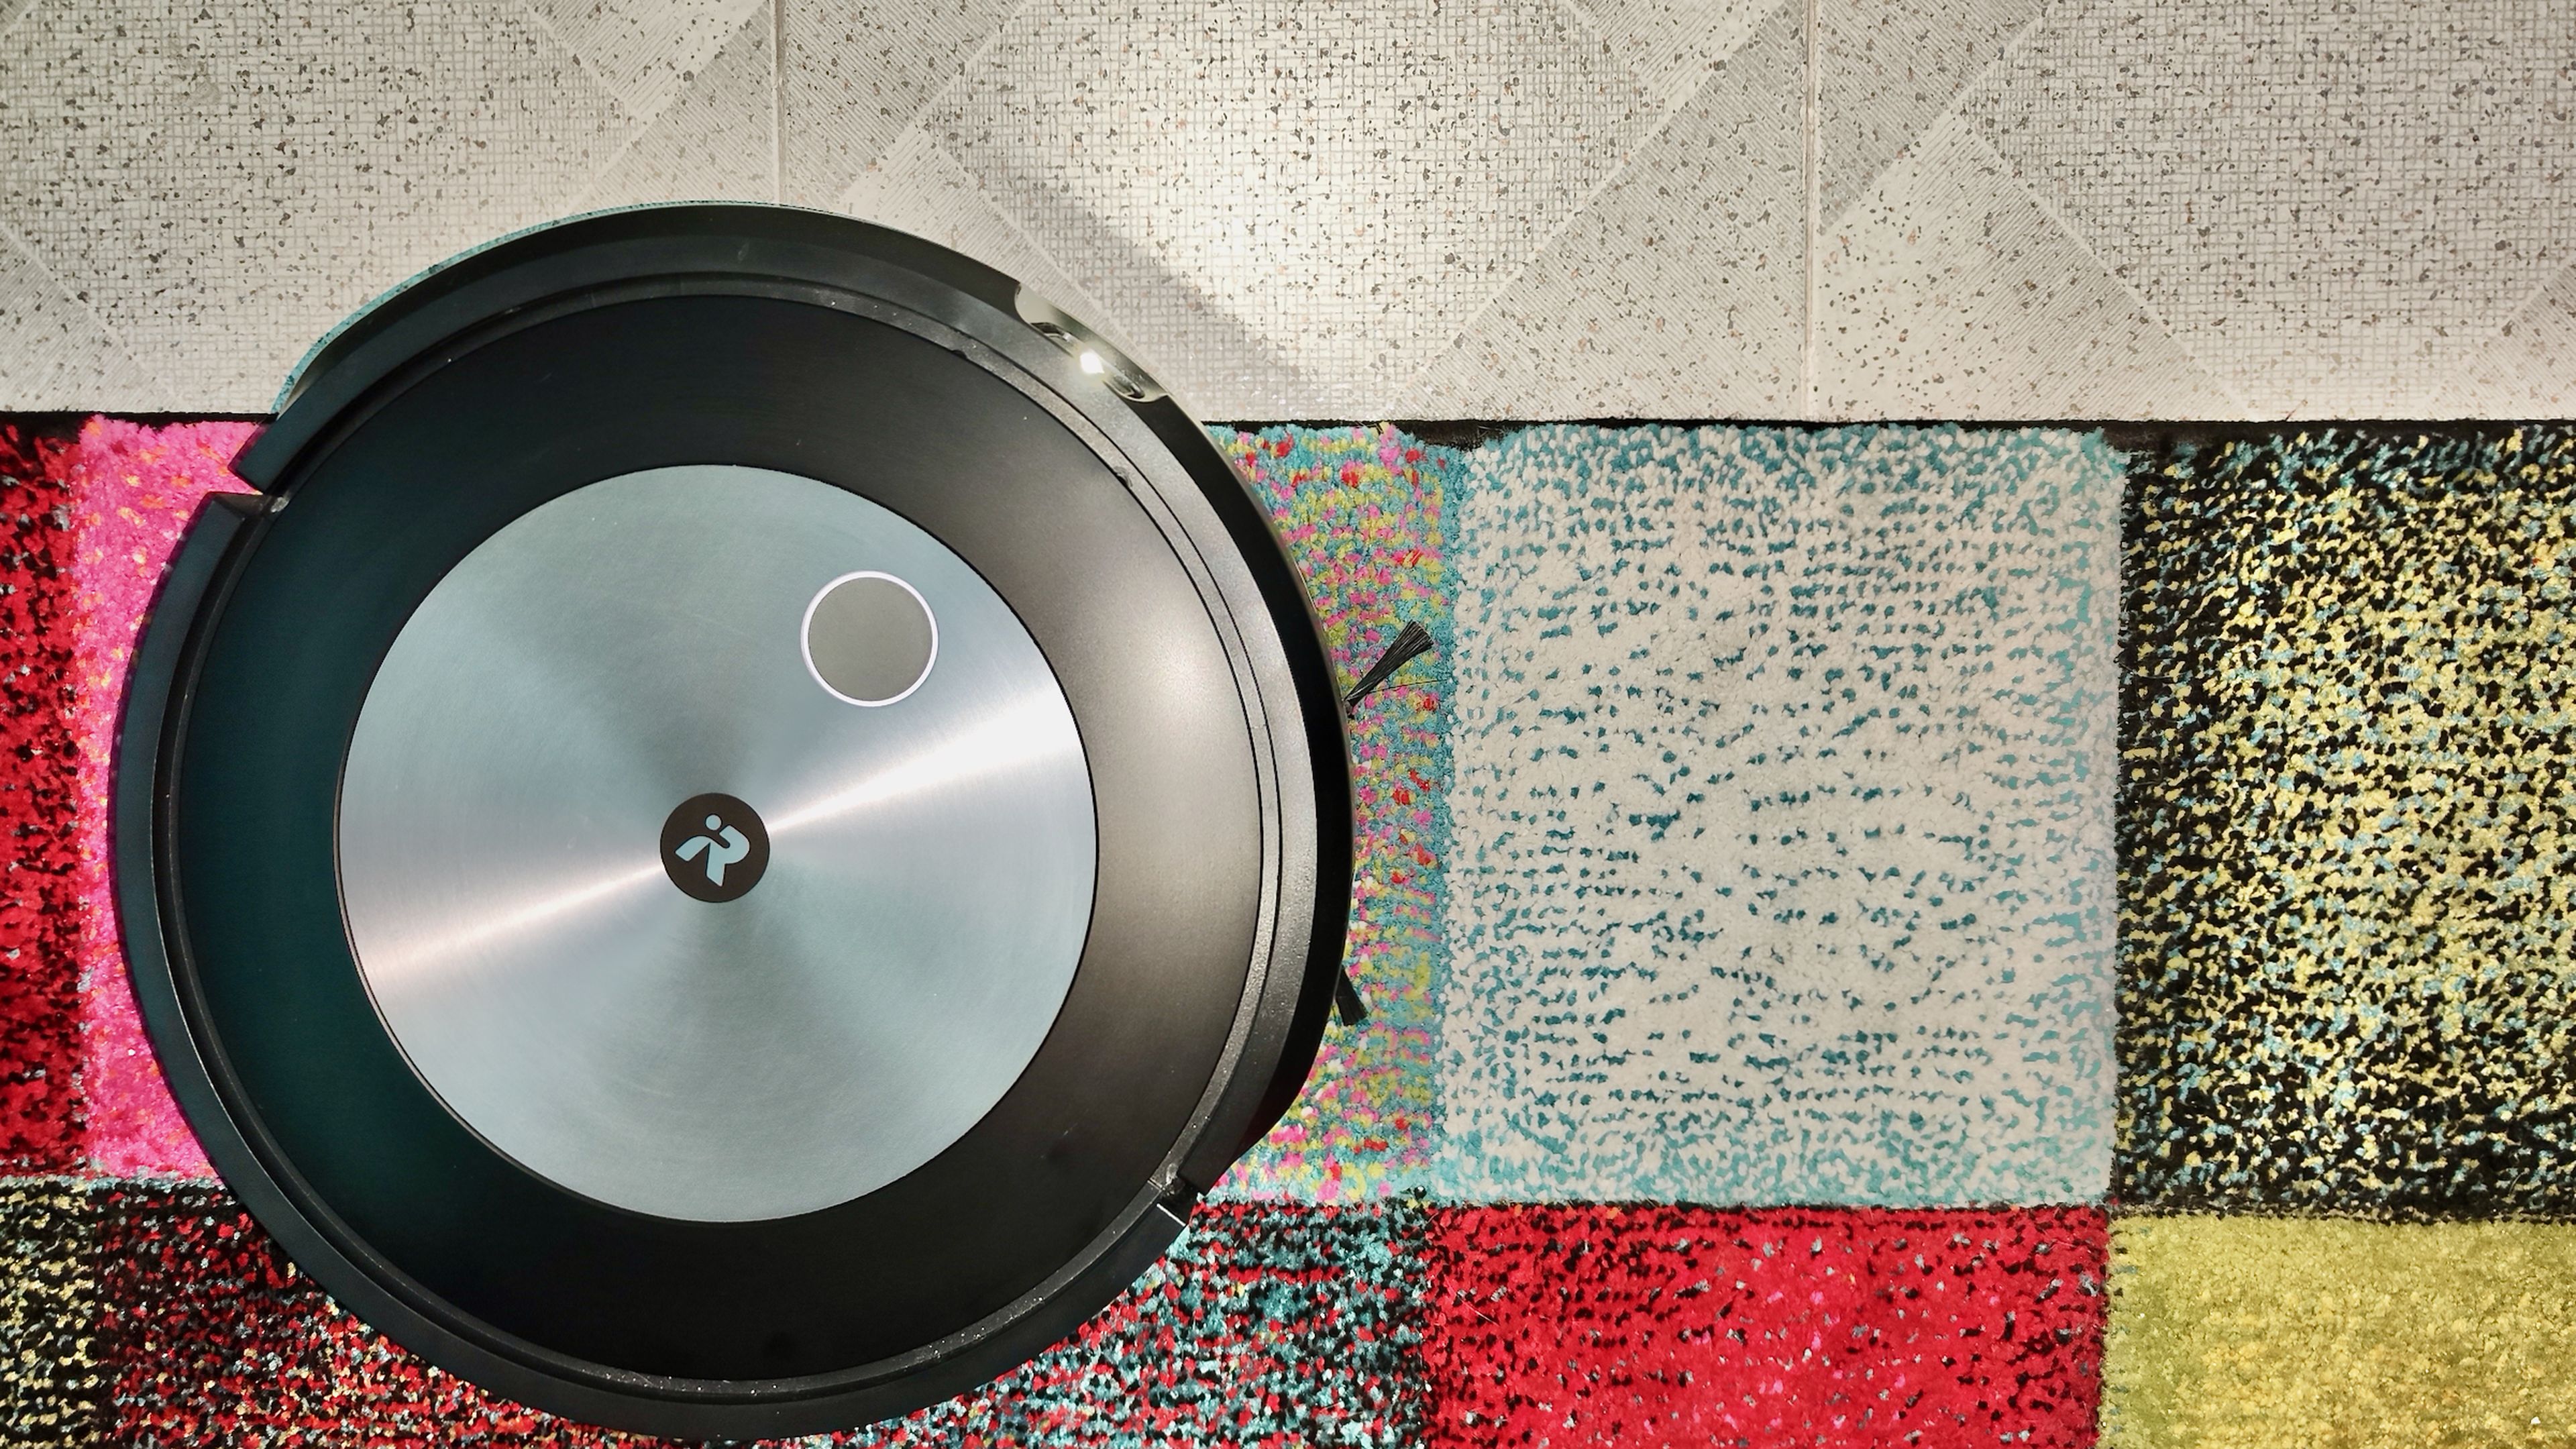 iRobot Roomba j7+, análisis y opinión: ¿merece la pena gastarse